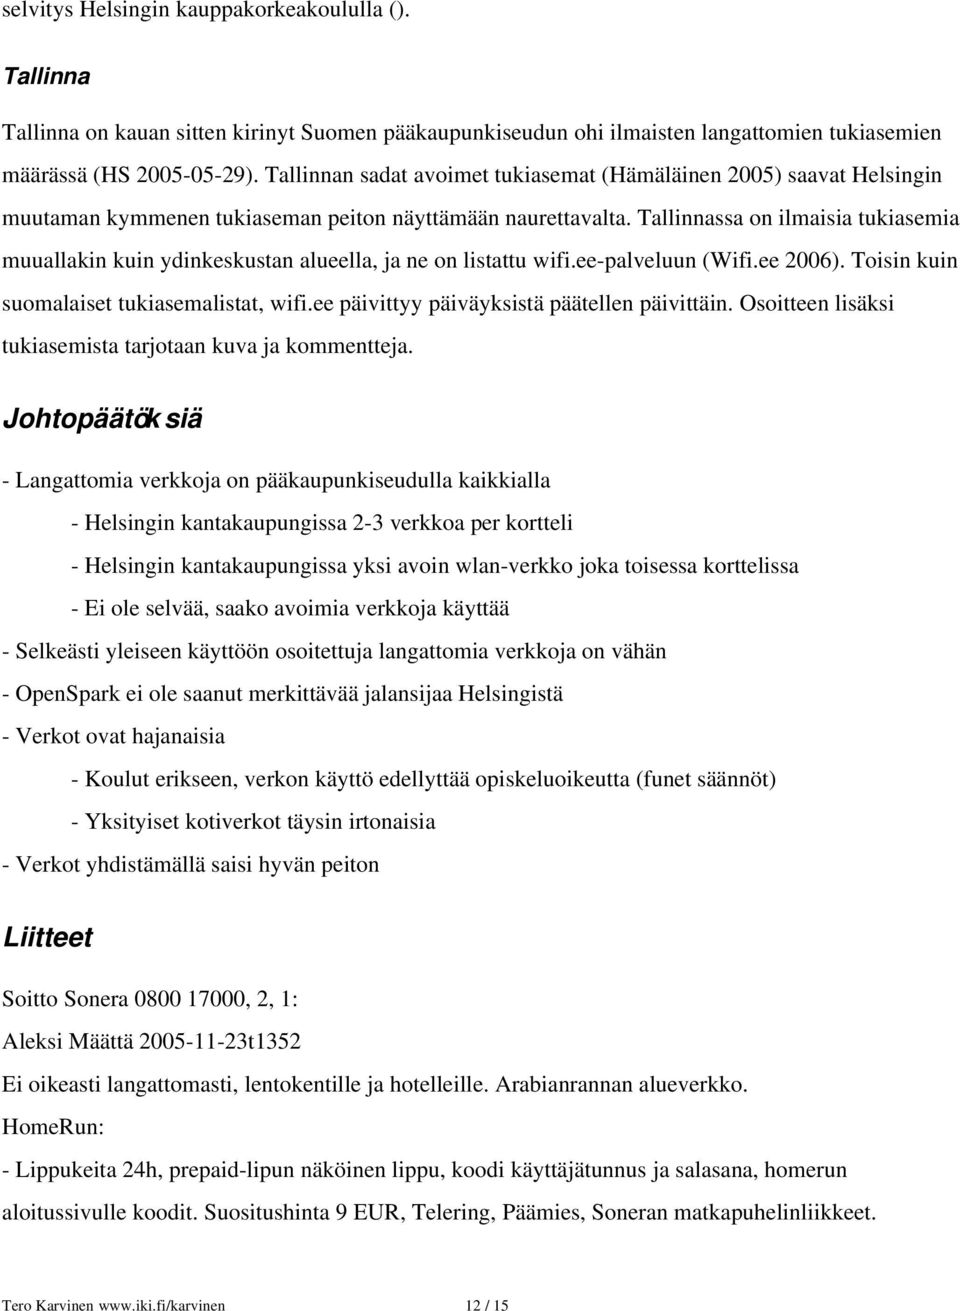 Tallinnassa on ilmaisia tukiasemia muuallakin kuin ydinkeskustan alueella, ja ne on listattu wifi.ee palveluun (Wifi.ee 2006). Toisin kuin suomalaiset tukiasemalistat, wifi.